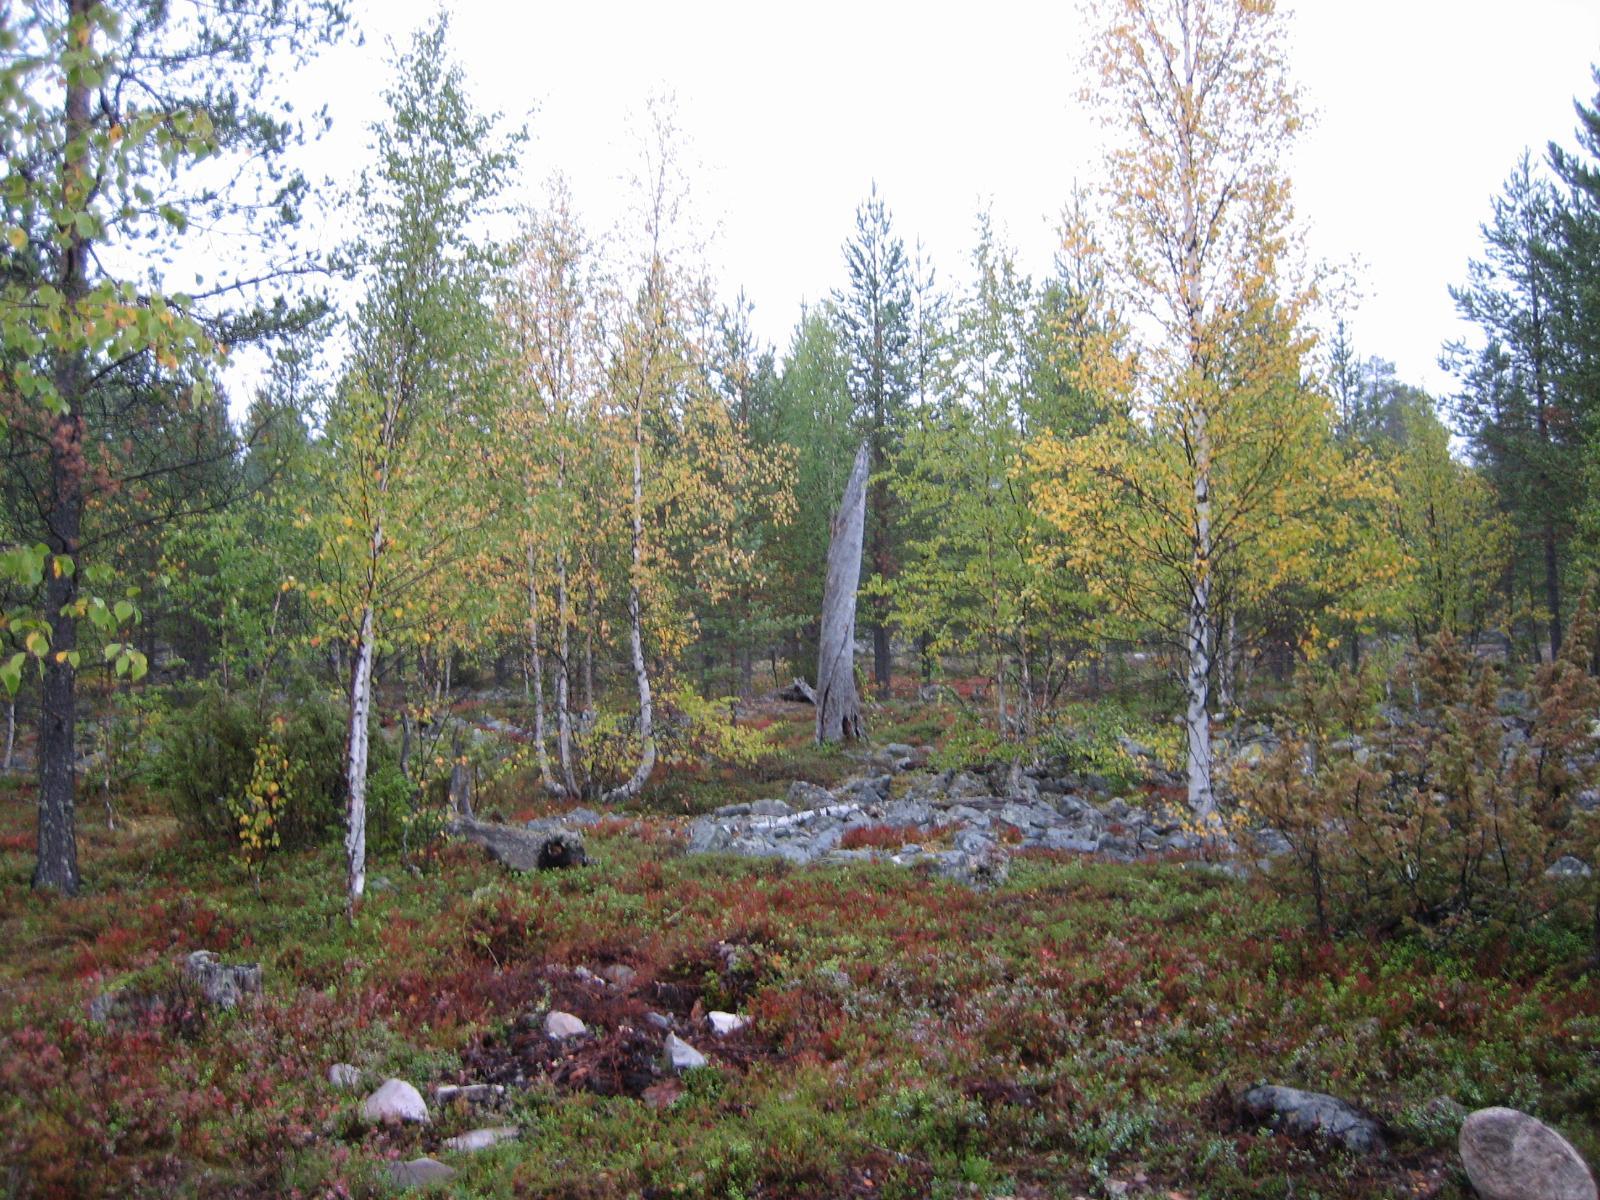 Sekametsän koivut ja varpukasvit ovat ruskan sävyissä. Metsän keskellä kivikkoa ja kelopuu.